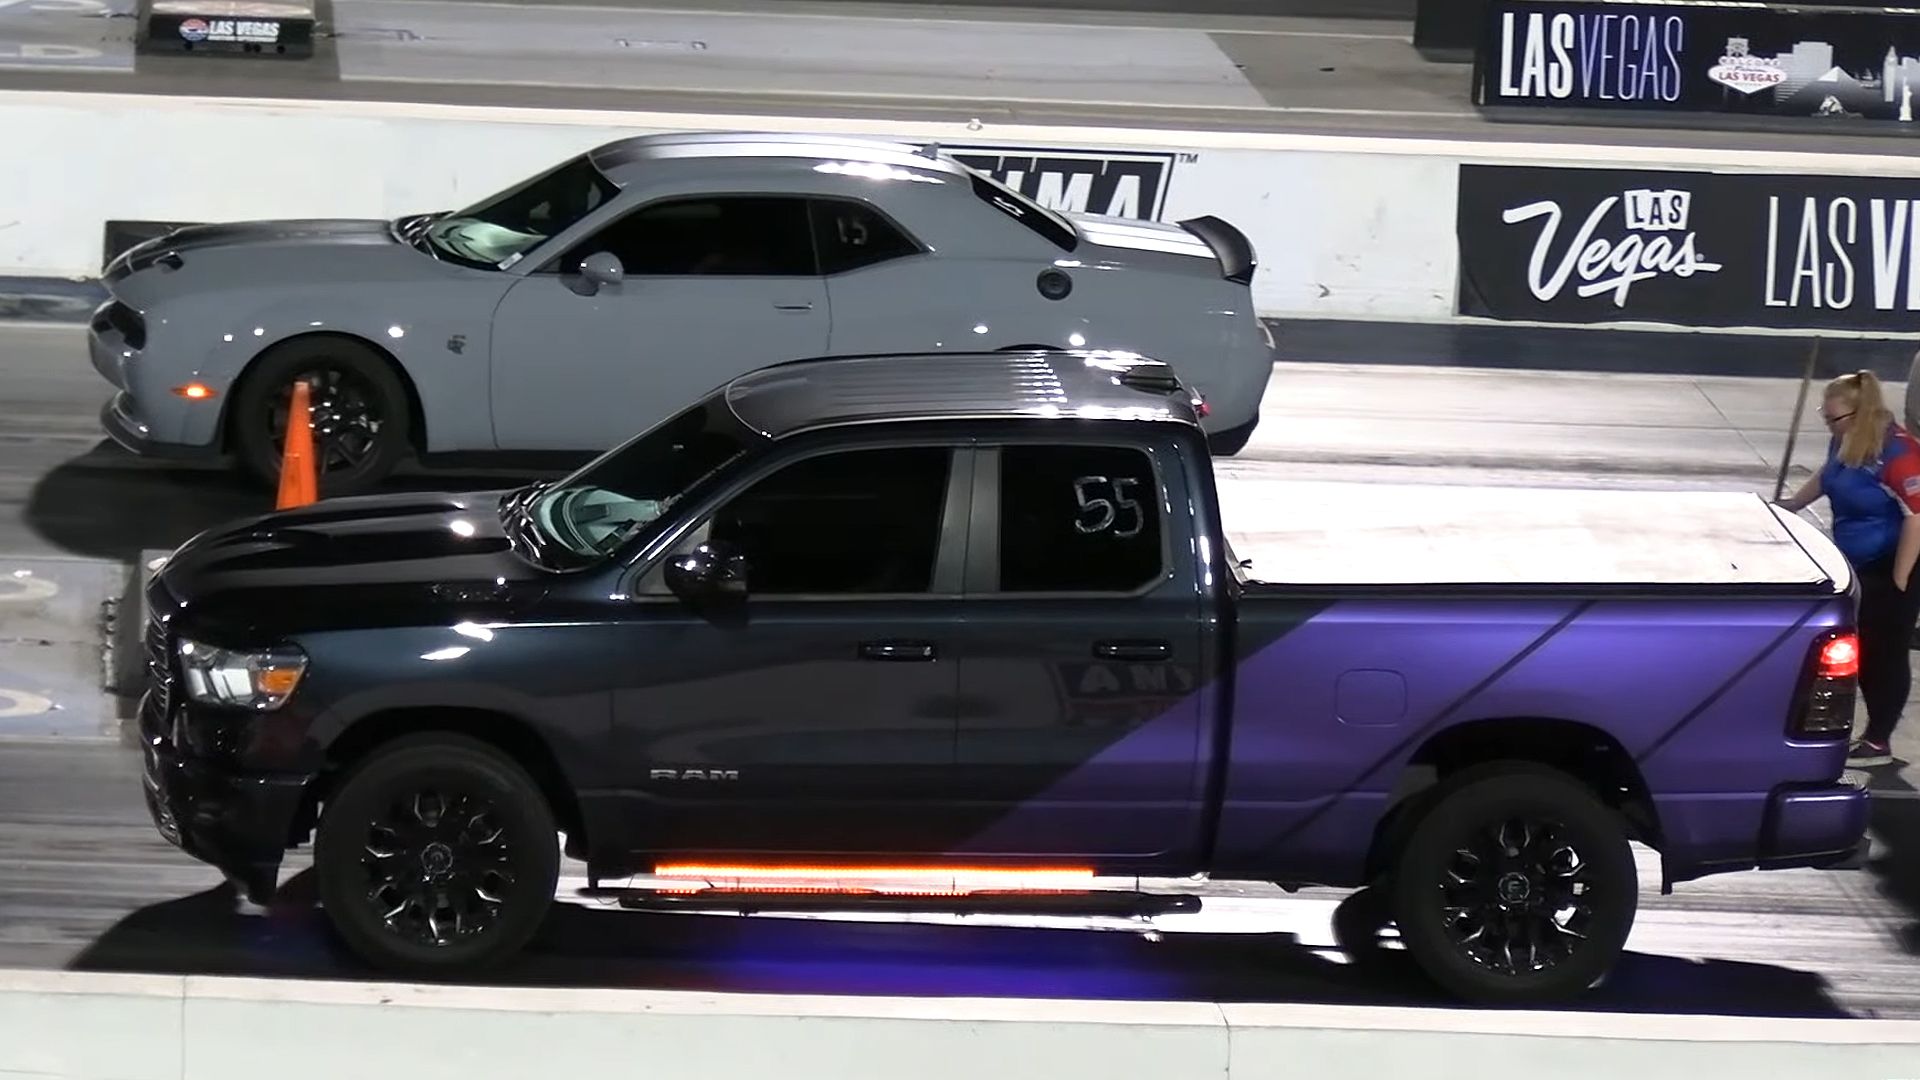 Ram TRX pickup truck Vs. Dodge Challenger SRT Hellcat Drag Race